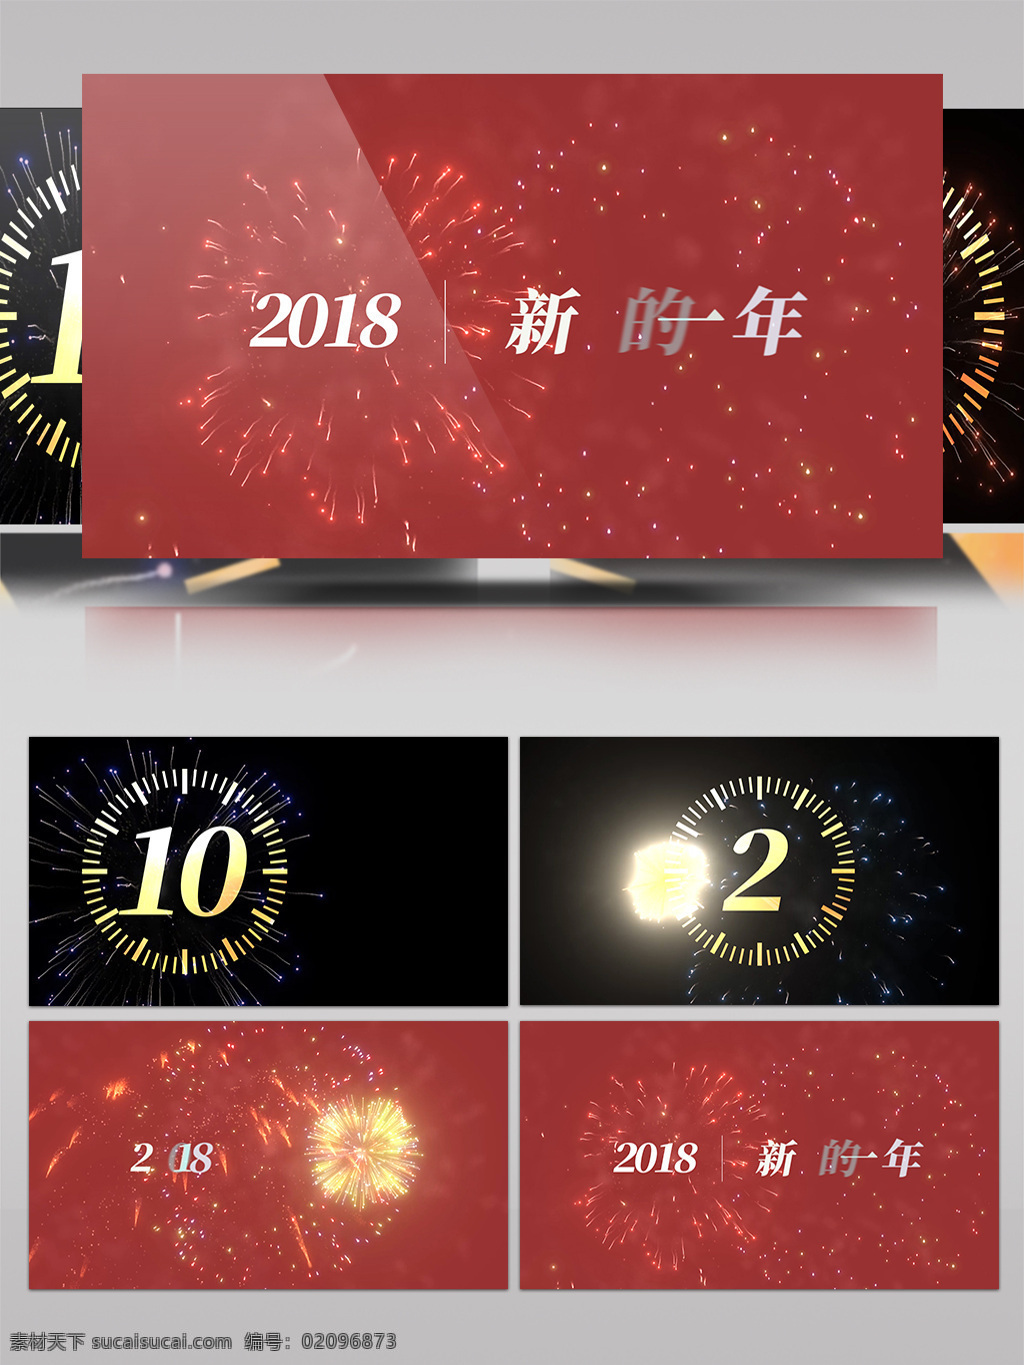 2018 新年 跨 年 倒计时 烟花 效果 ae 模板 红色 ae模板 新年跨年